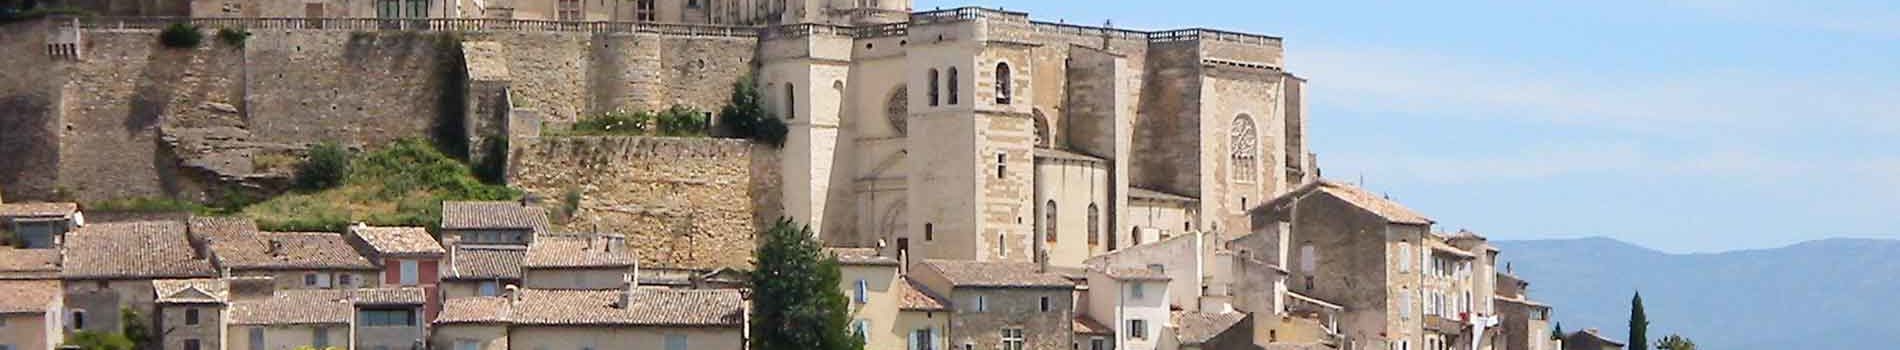 Château de Girgnan